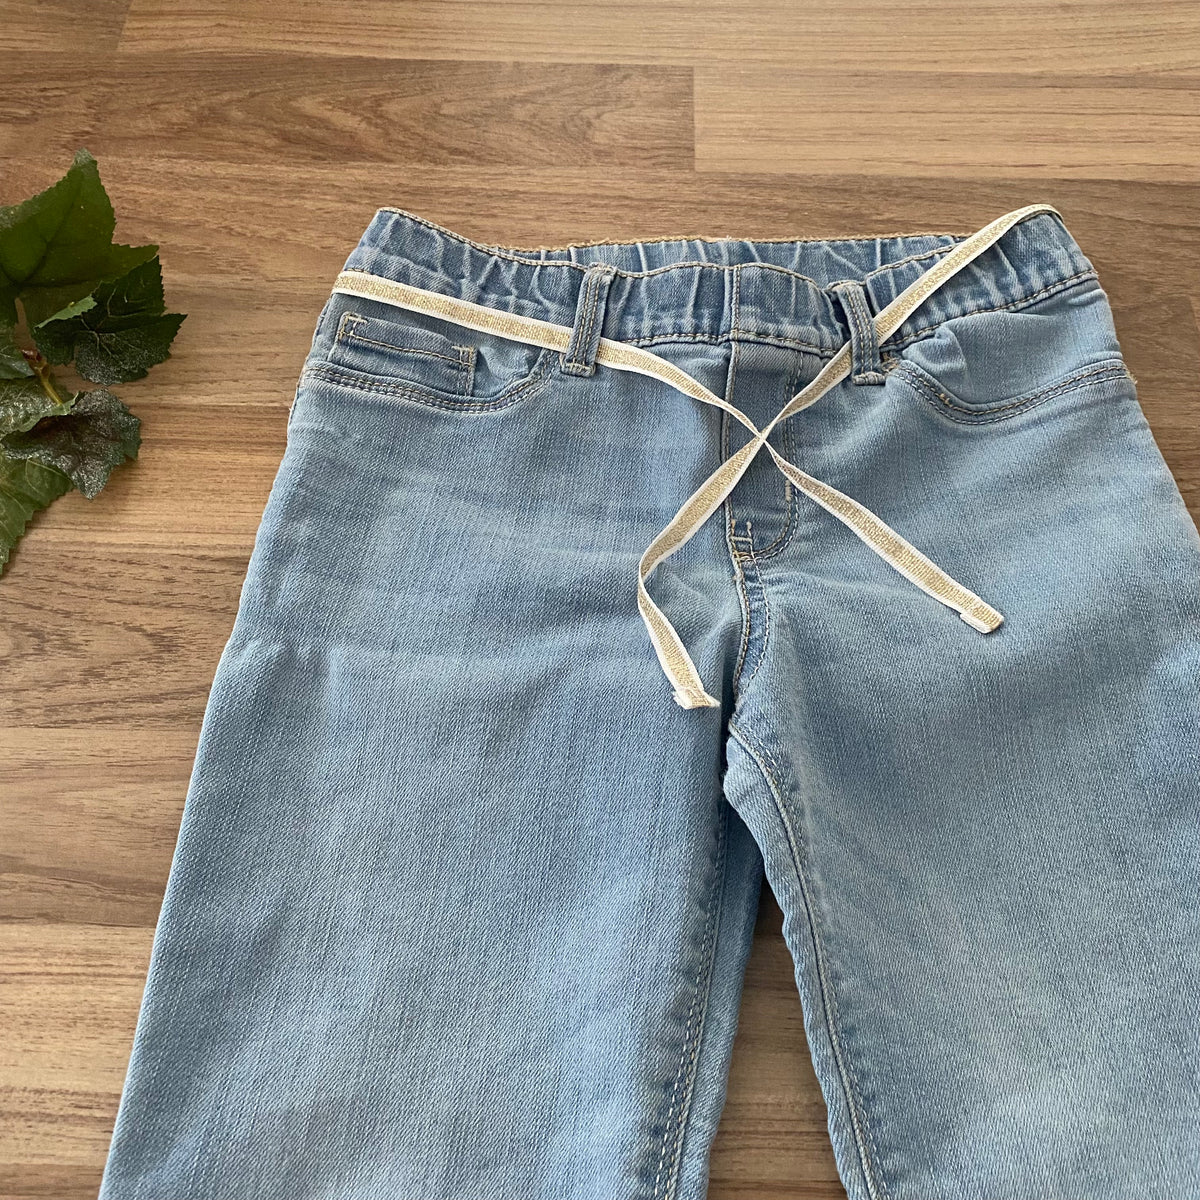 Lightweight Jeans (Girls Size 7)